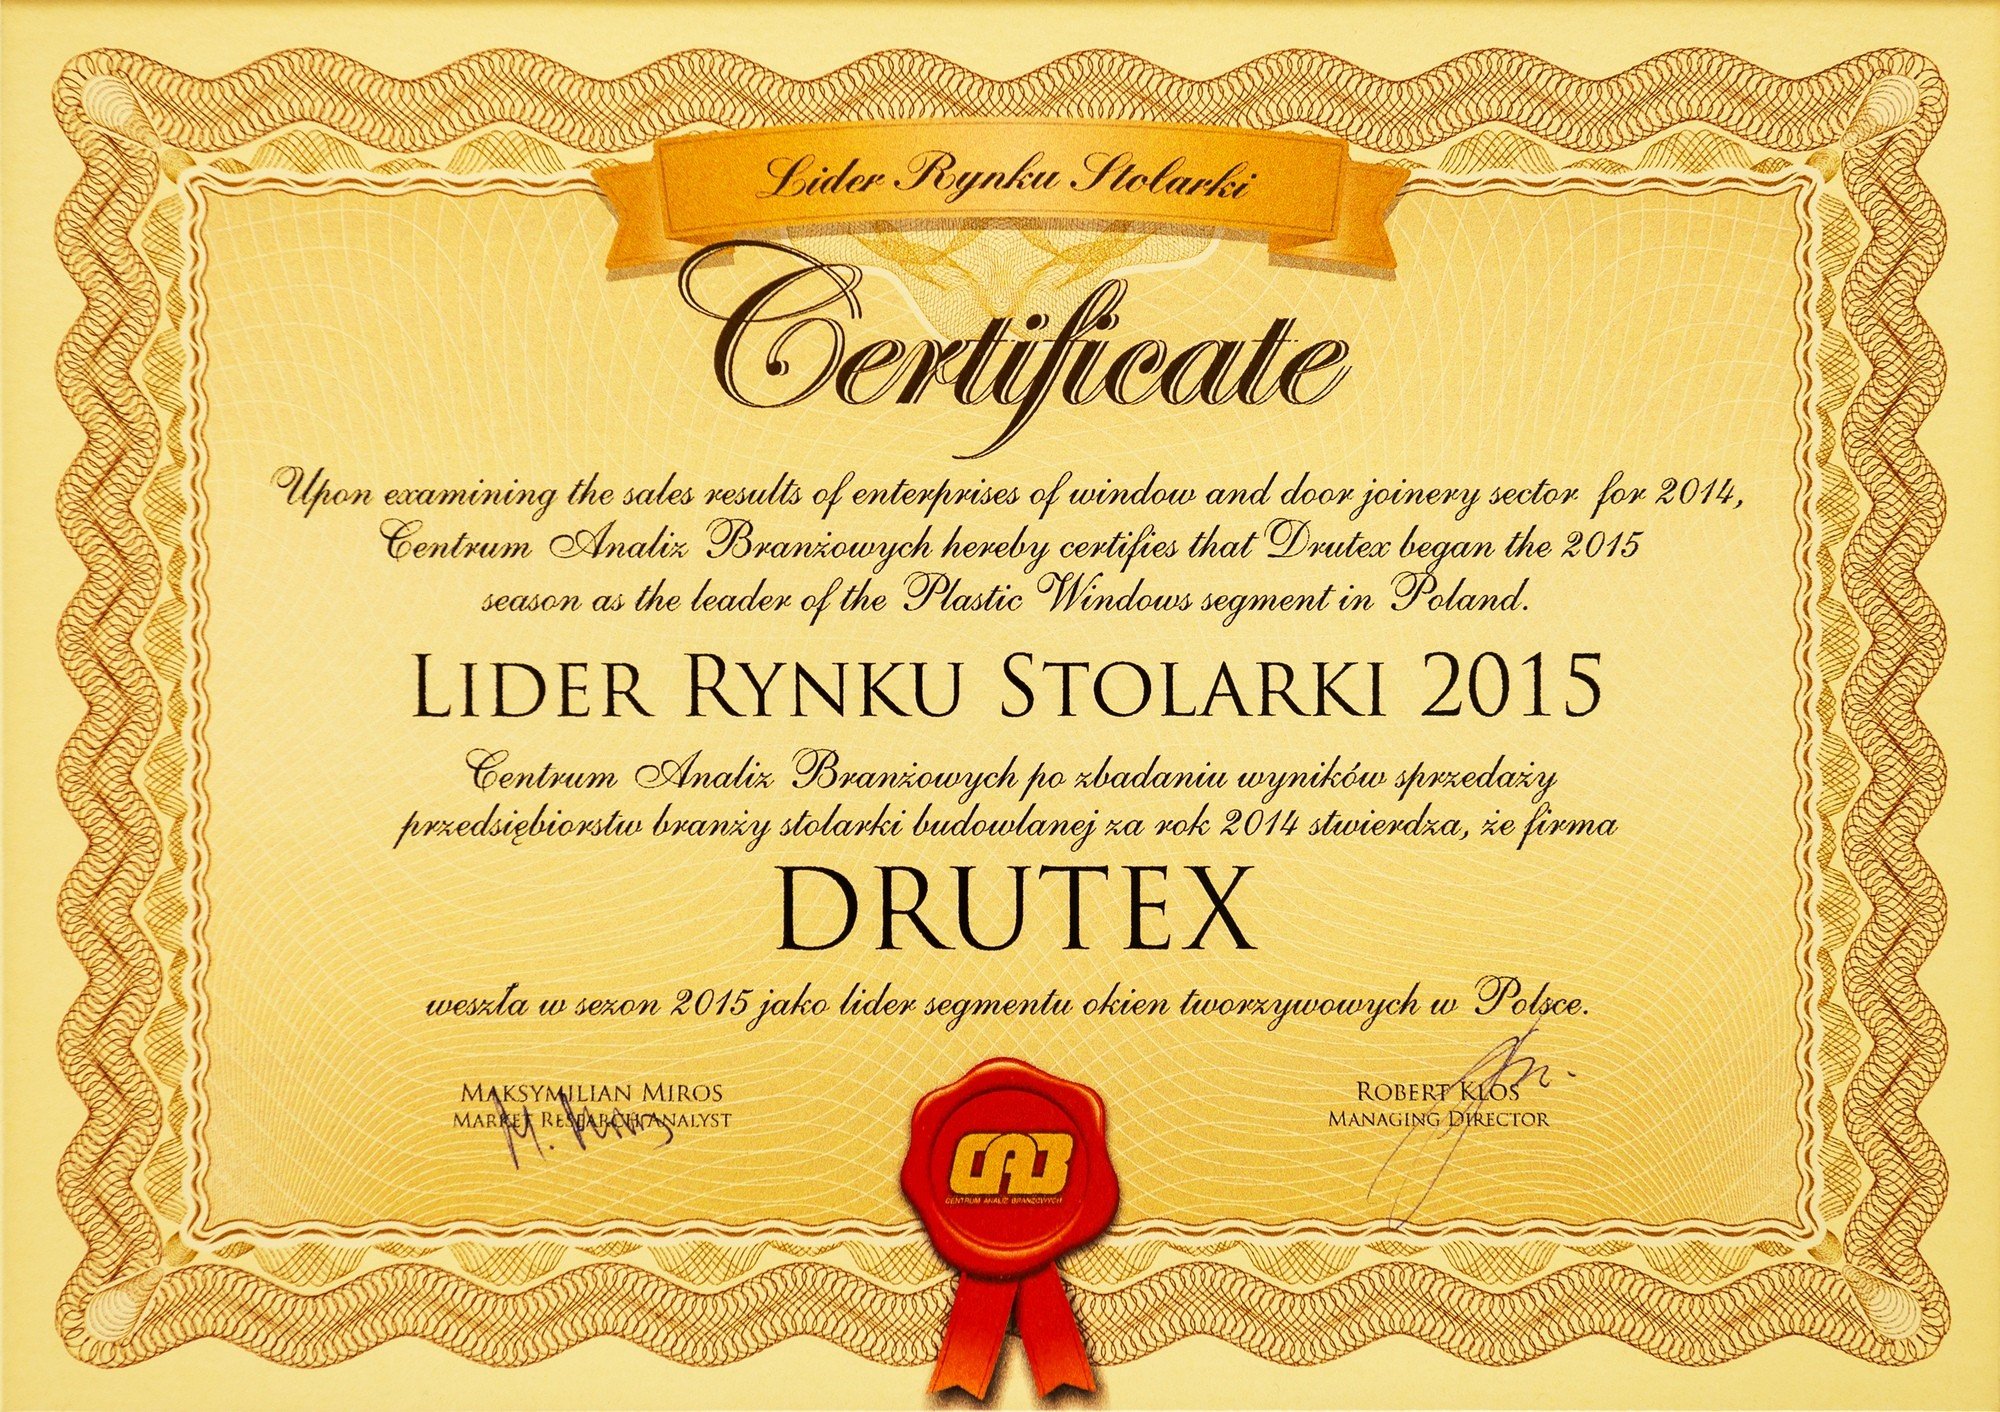 DRUTEX je líder v oblasti spracovanie dreva v Poľsku!